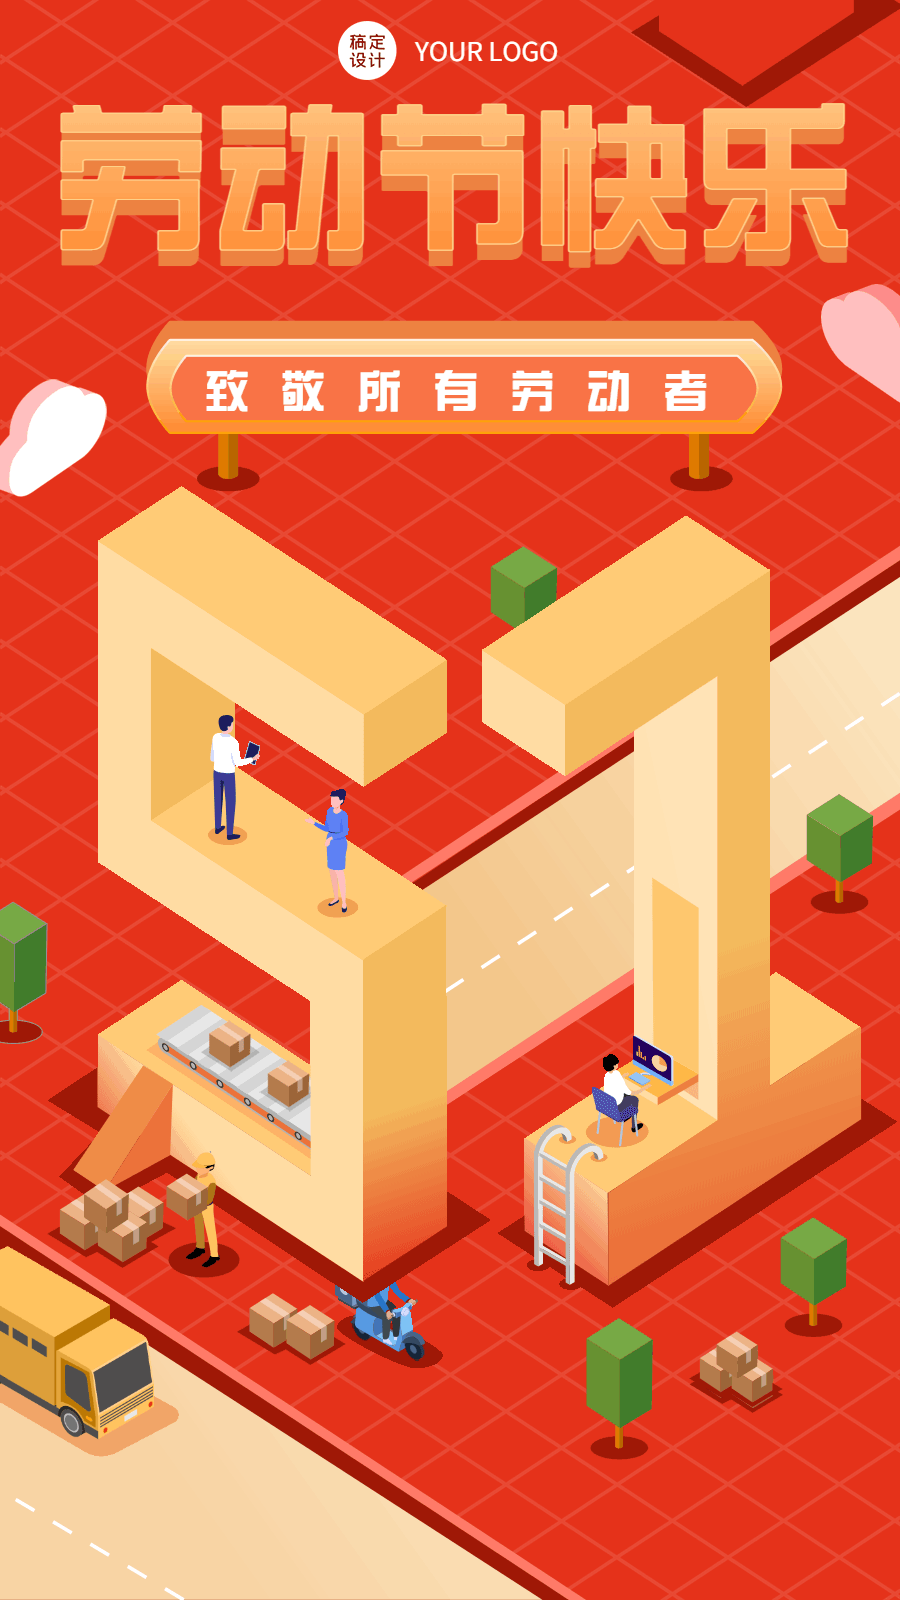 劳动节节日祝福插画动态手机海报预览效果